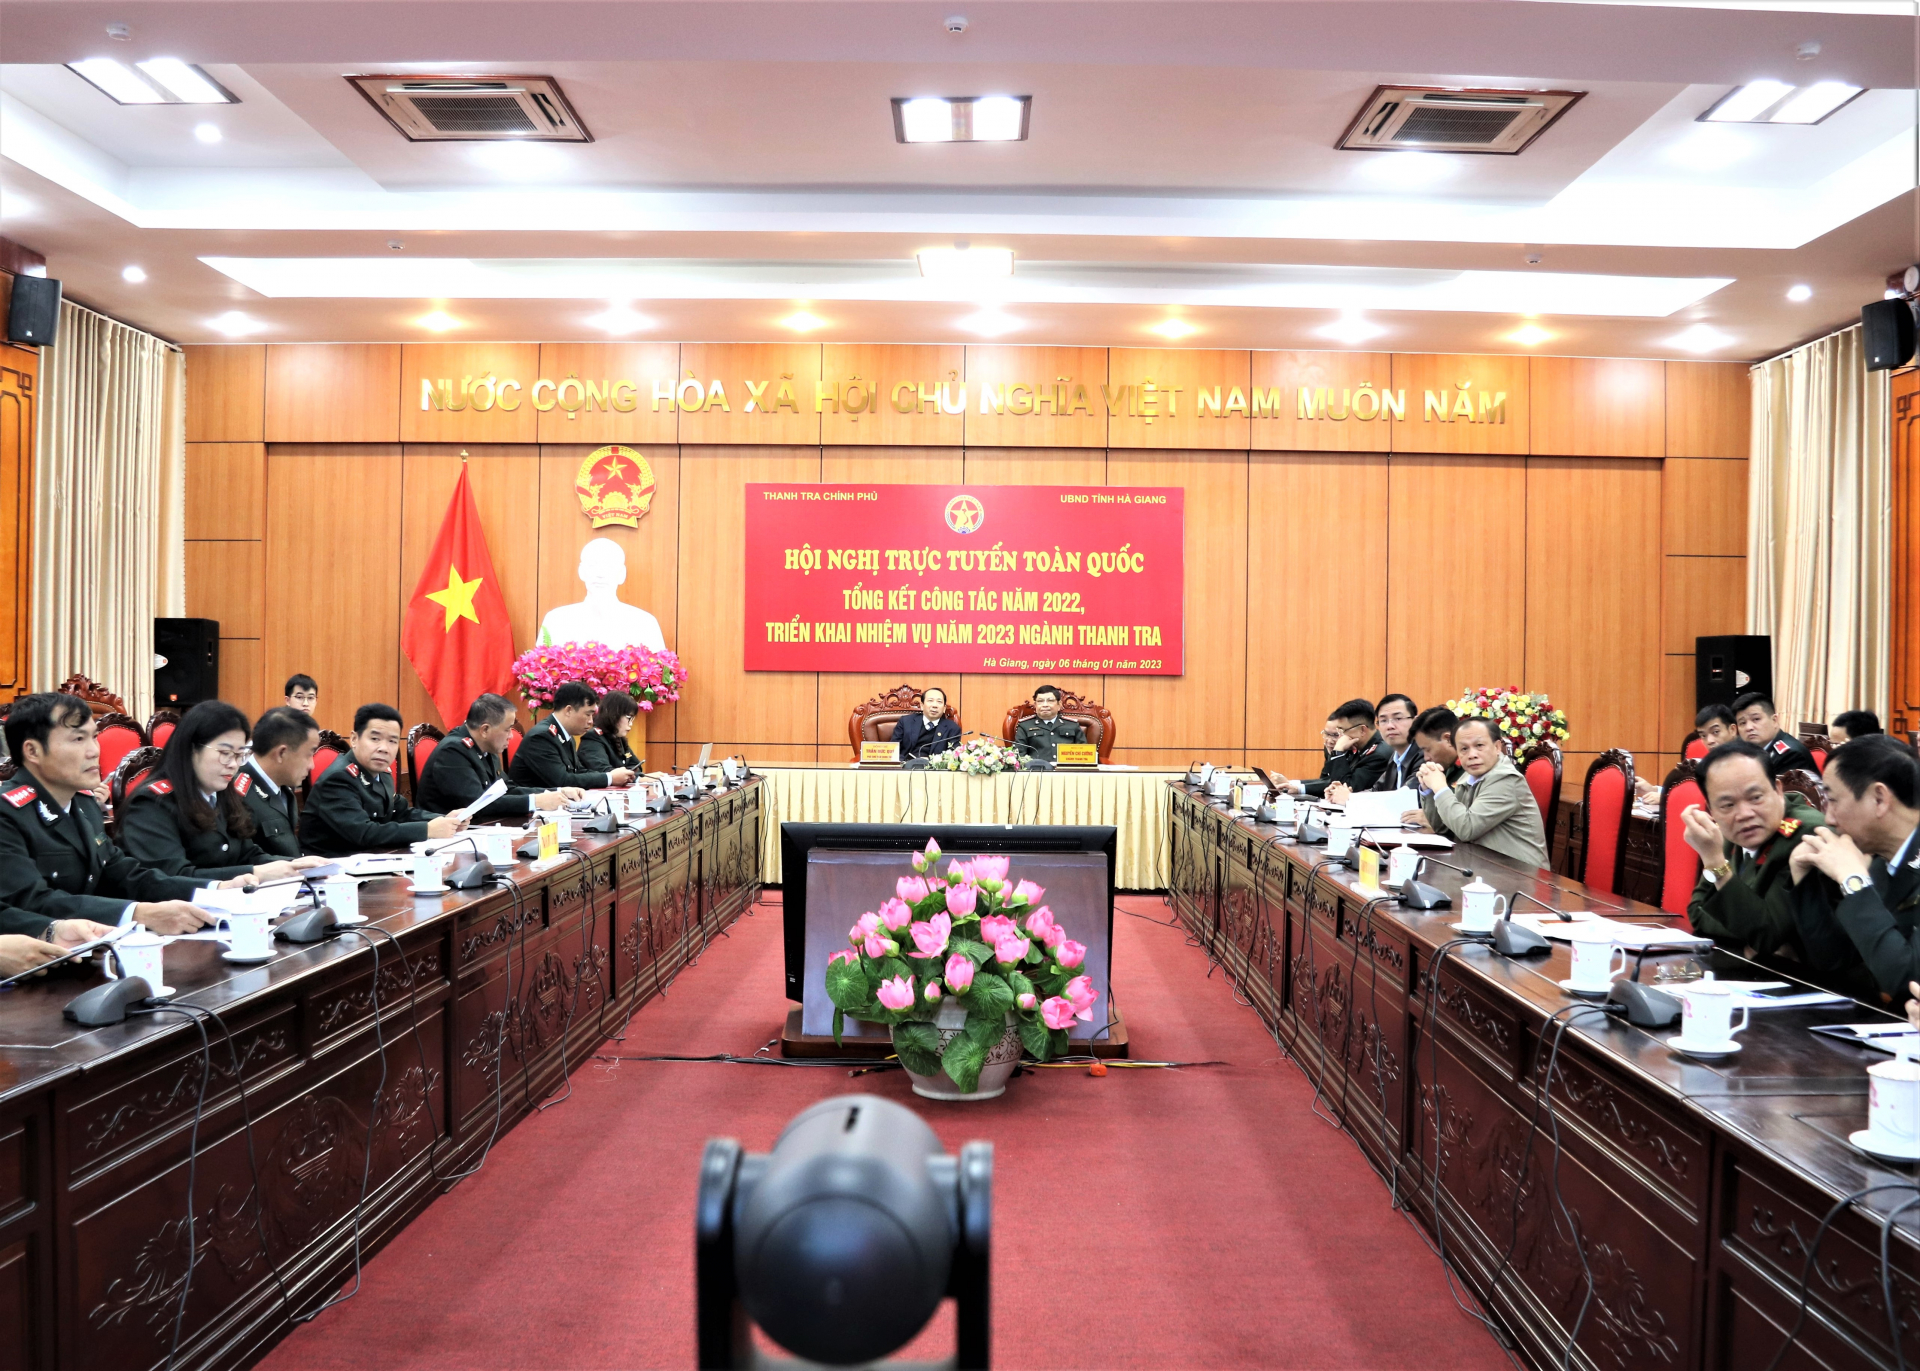 Điểm cầu tỉnh Hà Giang dự hội nghị trực tuyến toàn quốc về công tác thanh tra